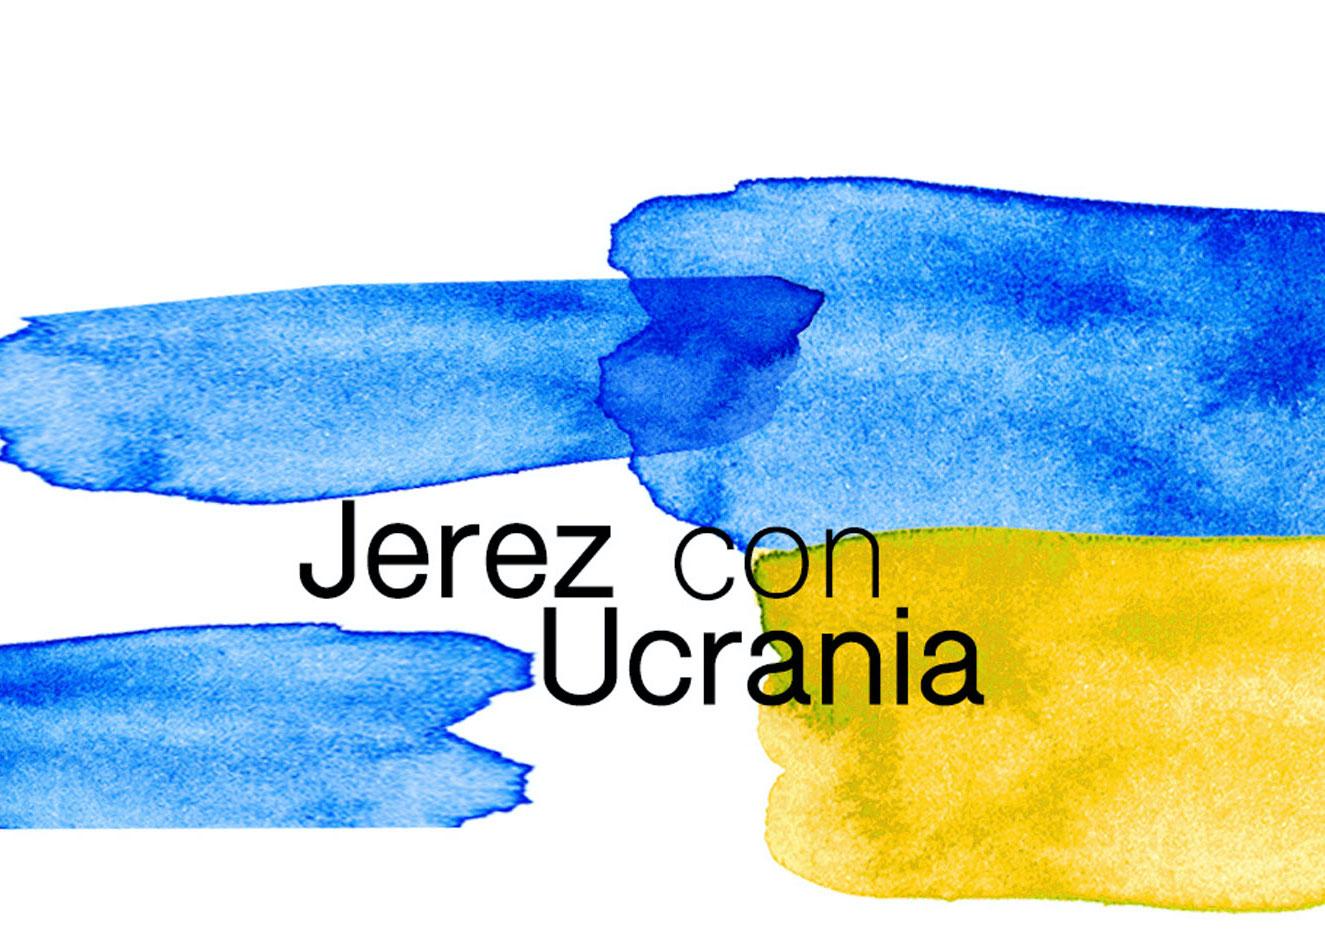 Habilitado en Jerez un canal oficial para ayudar a la comunidad ucraniana